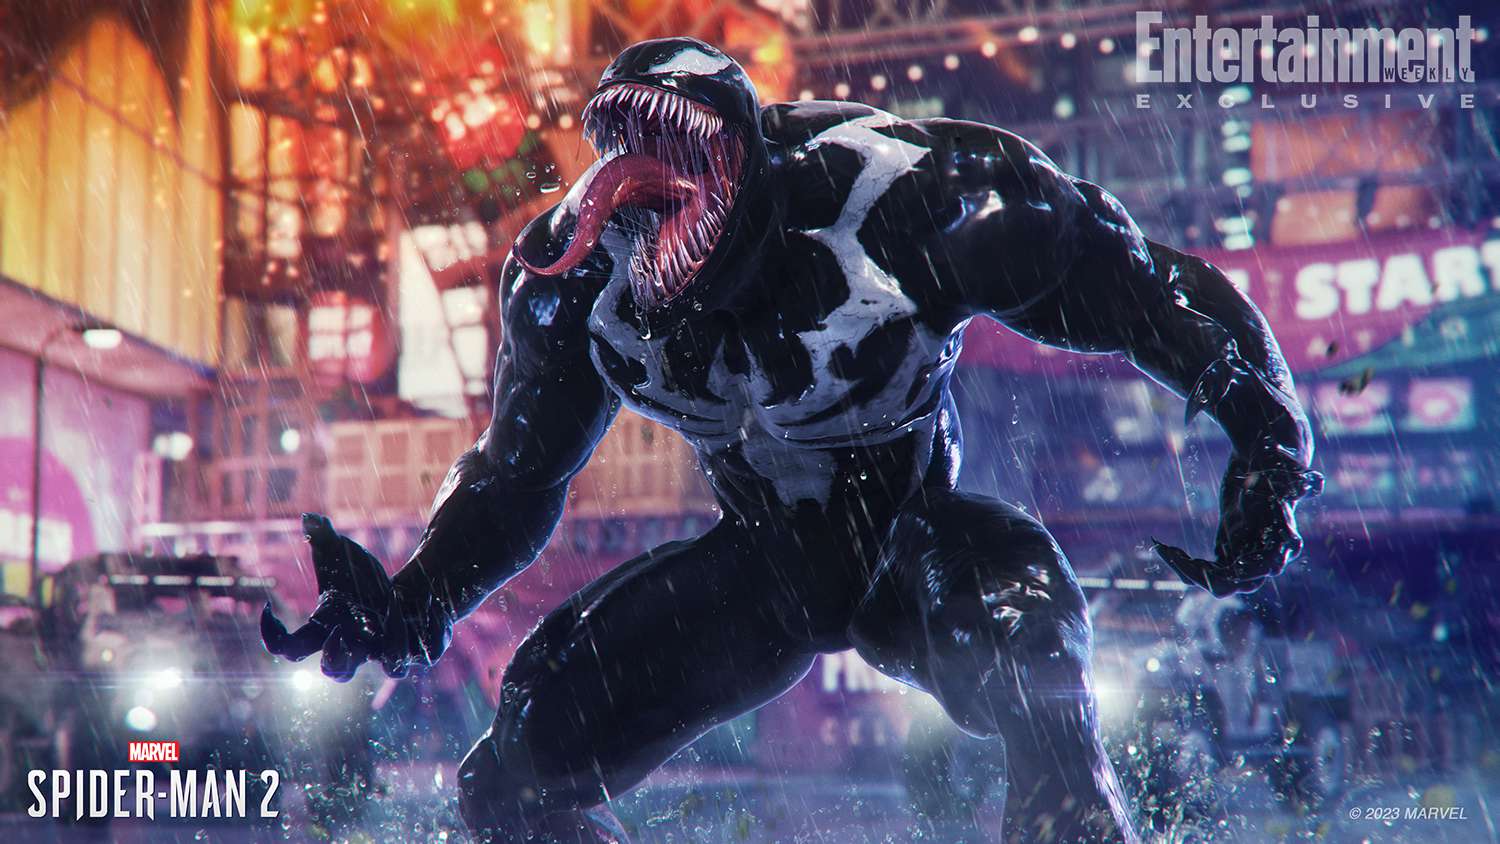 Marvel's Spider-Man 2' team previews Tony Todd's Venom | EW.com